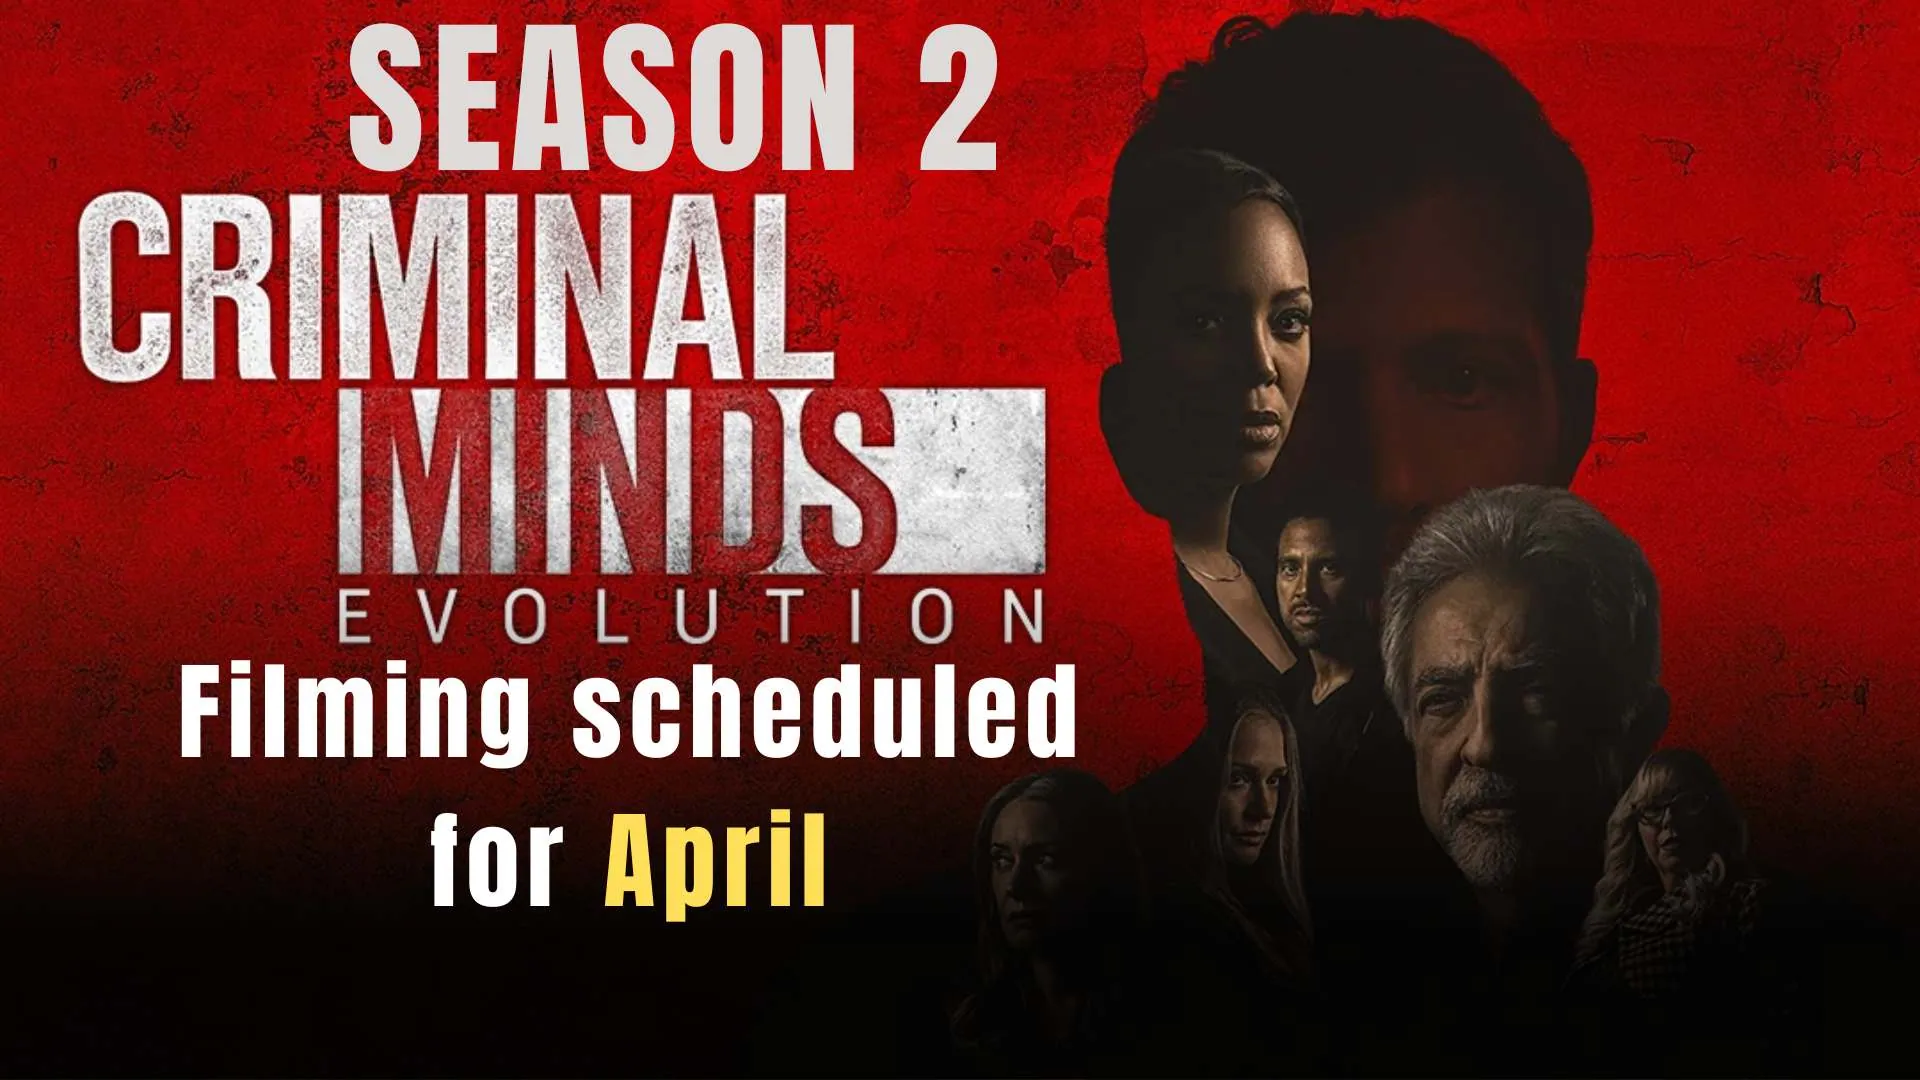 'Criminal Minds: Evolution' Season 2 filming is scheduled for April